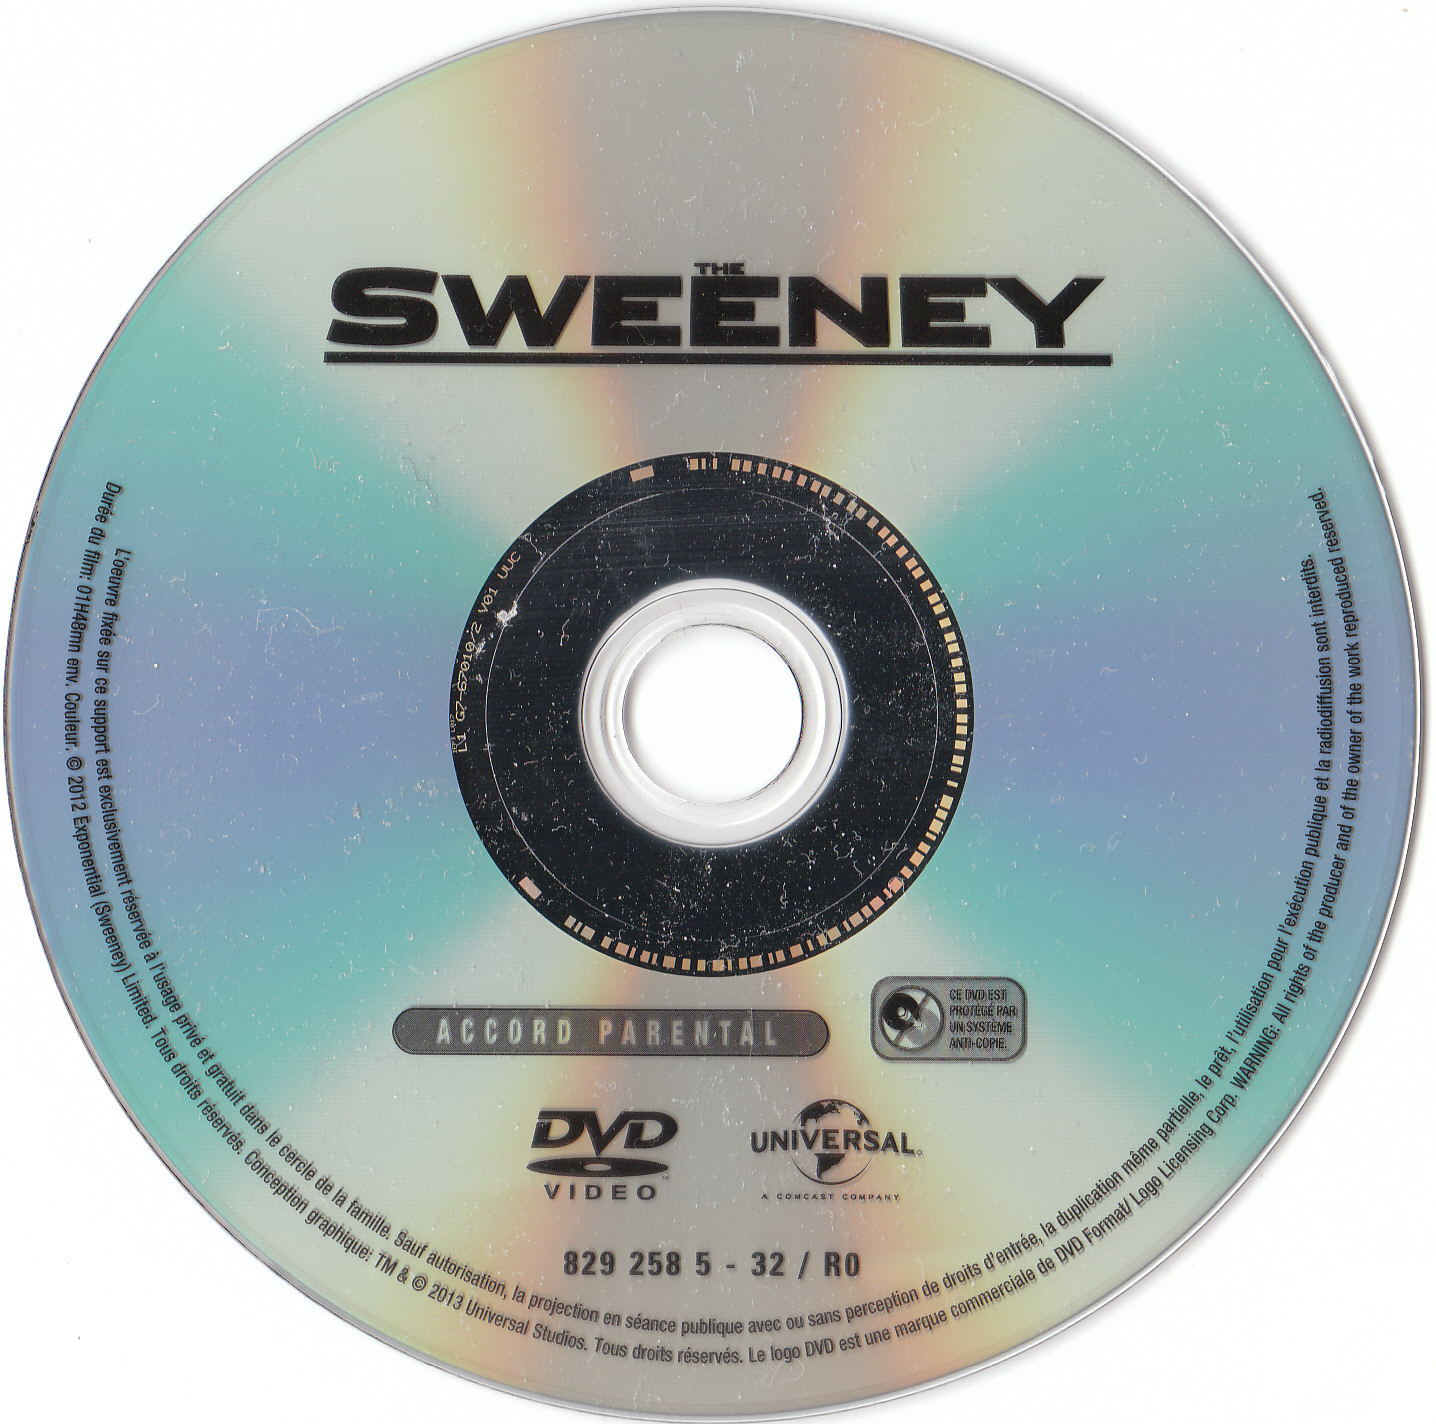 The sweeney